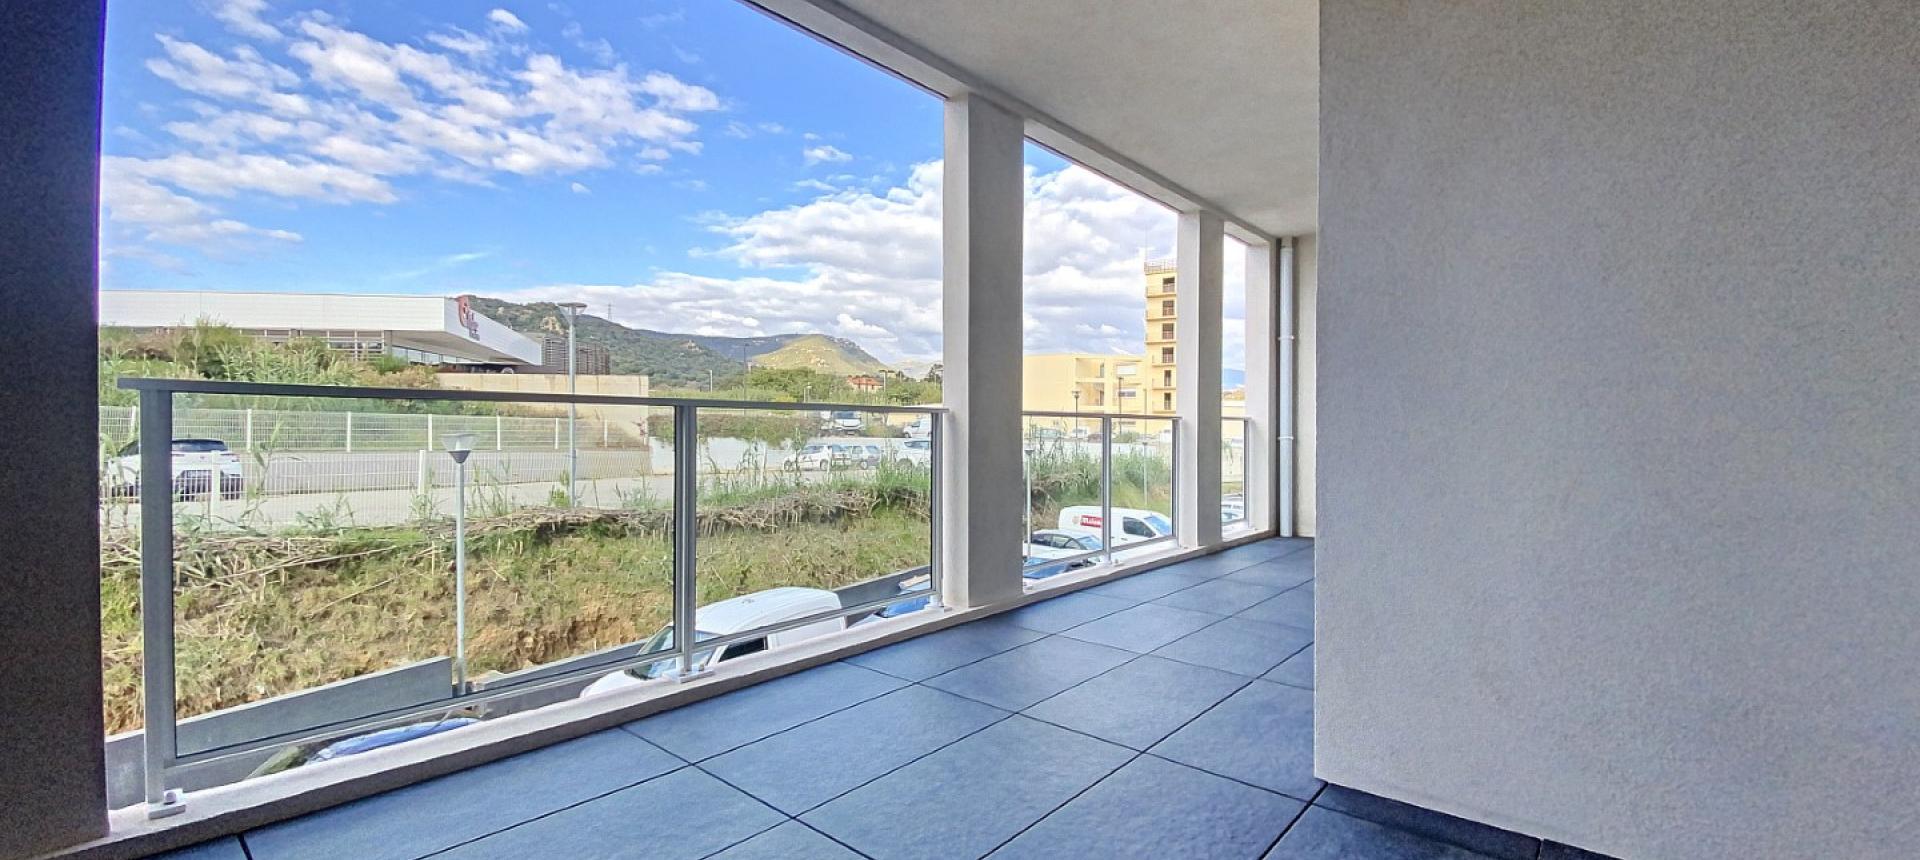 A Ajaccio, secteur Rocade, vente d'un appartement de type F3 de 67 m² avec terrasse - résidence récente